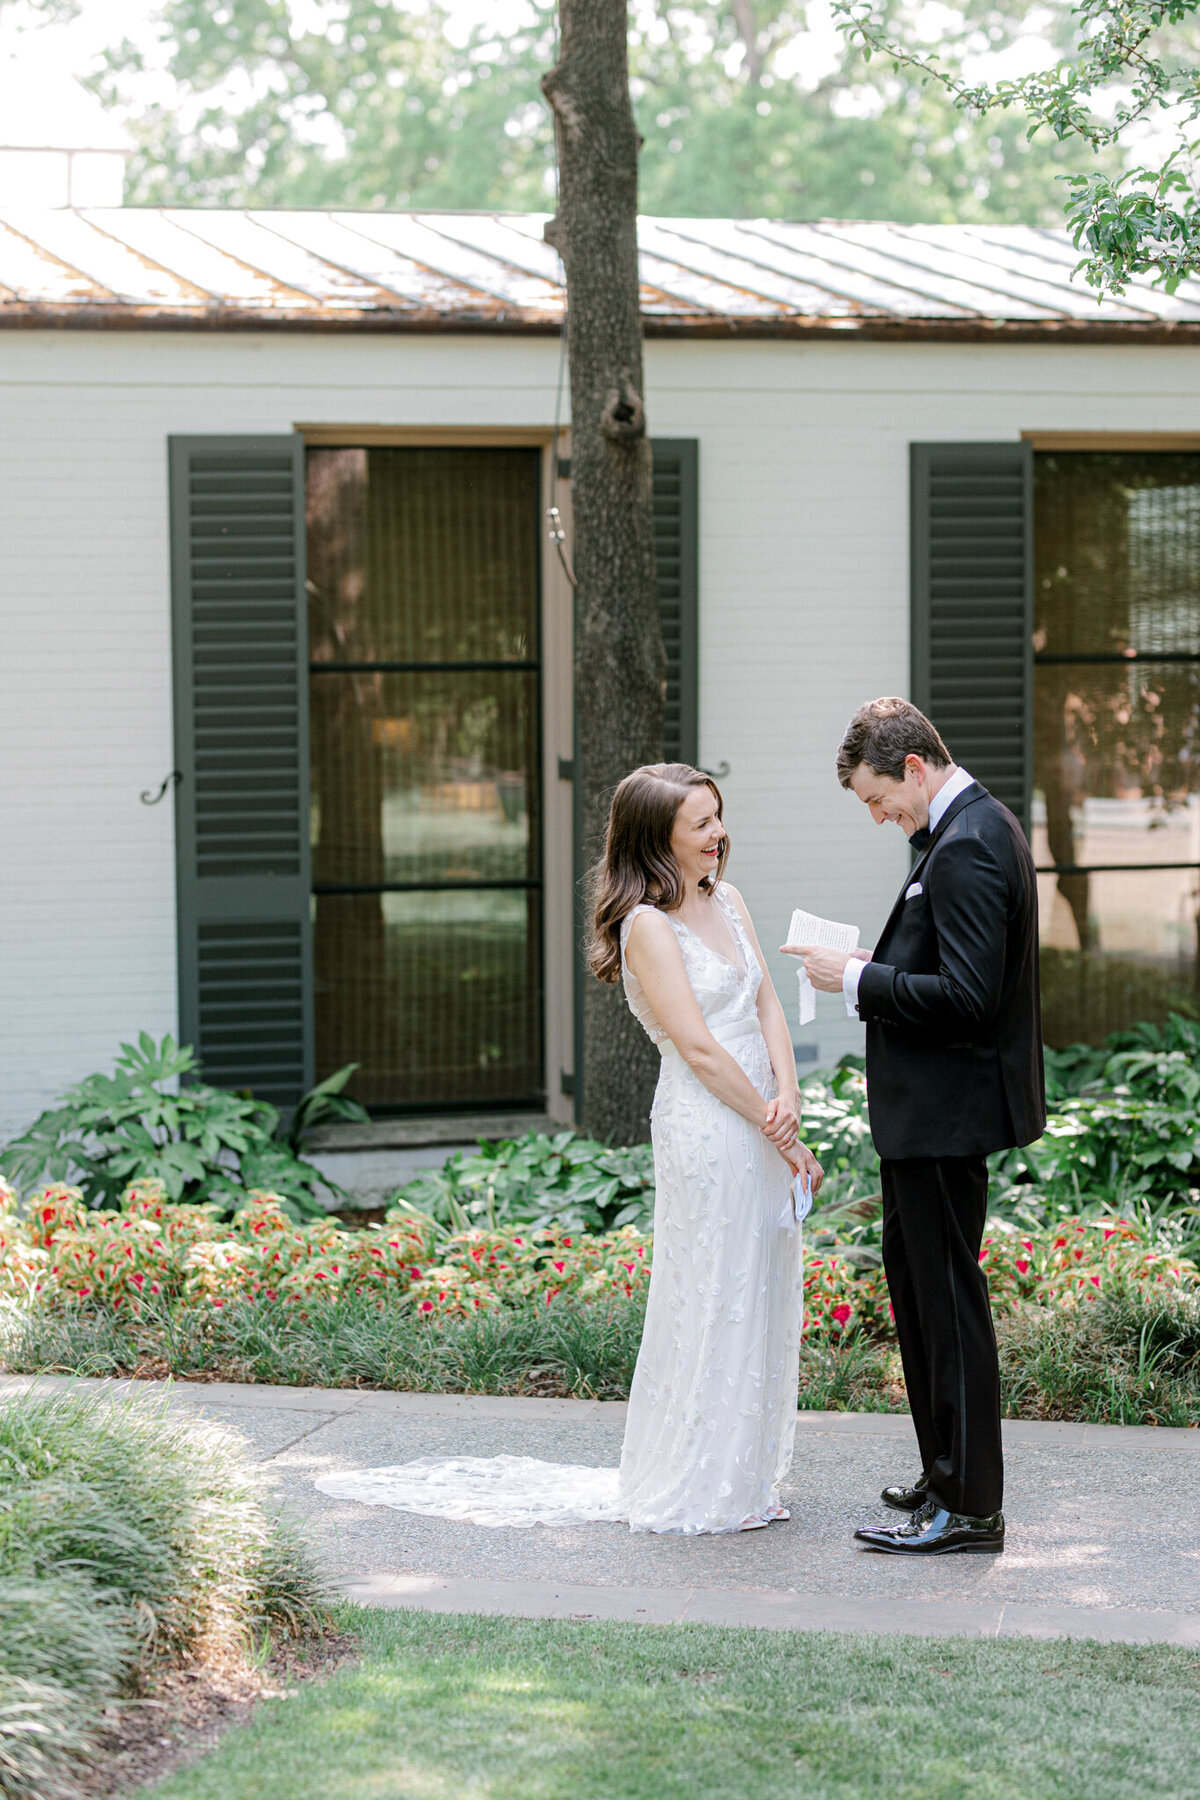 Gena & Matt's Wedding at the Dallas Arboretum | Dallas Wedding Photographer | Sami Kathryn Photography-77